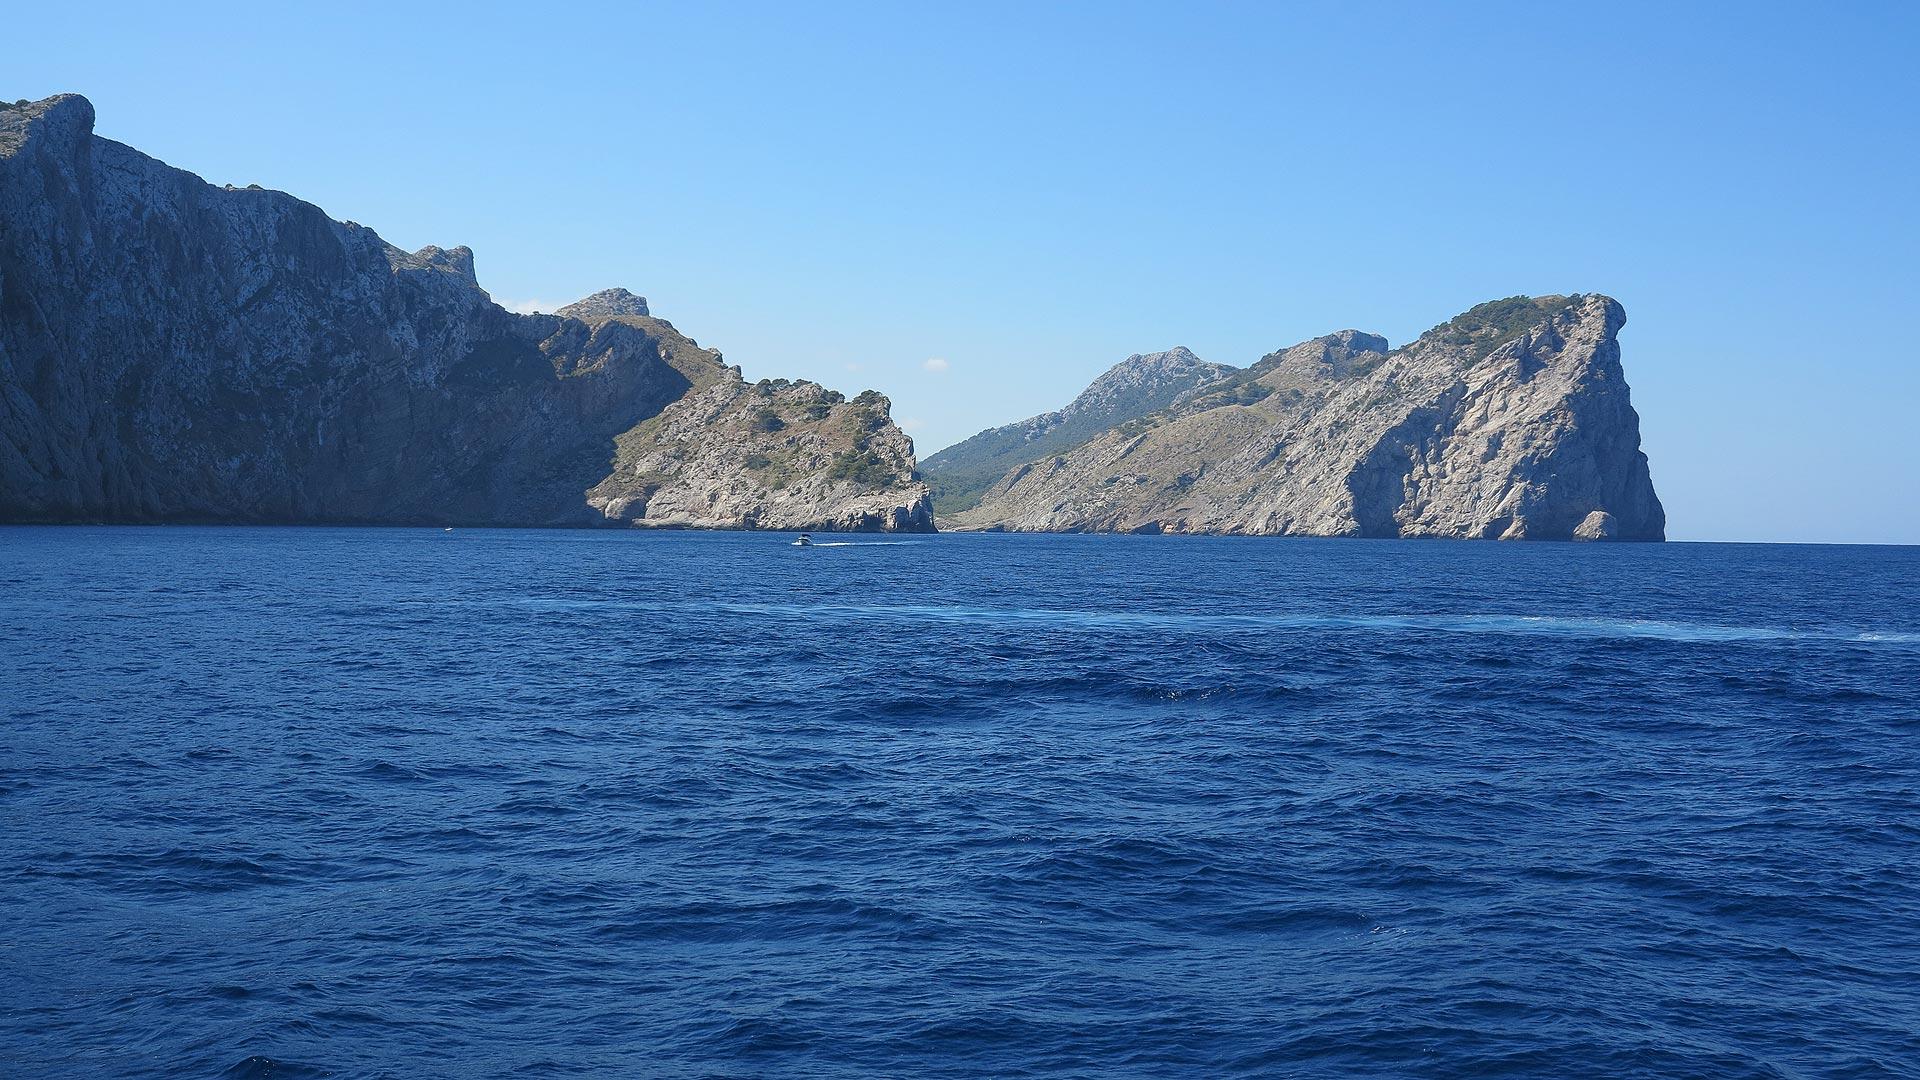 Das ist die nördlichste Spitze vom Cap de Formentor, also der gesamten Insel Mallorca.